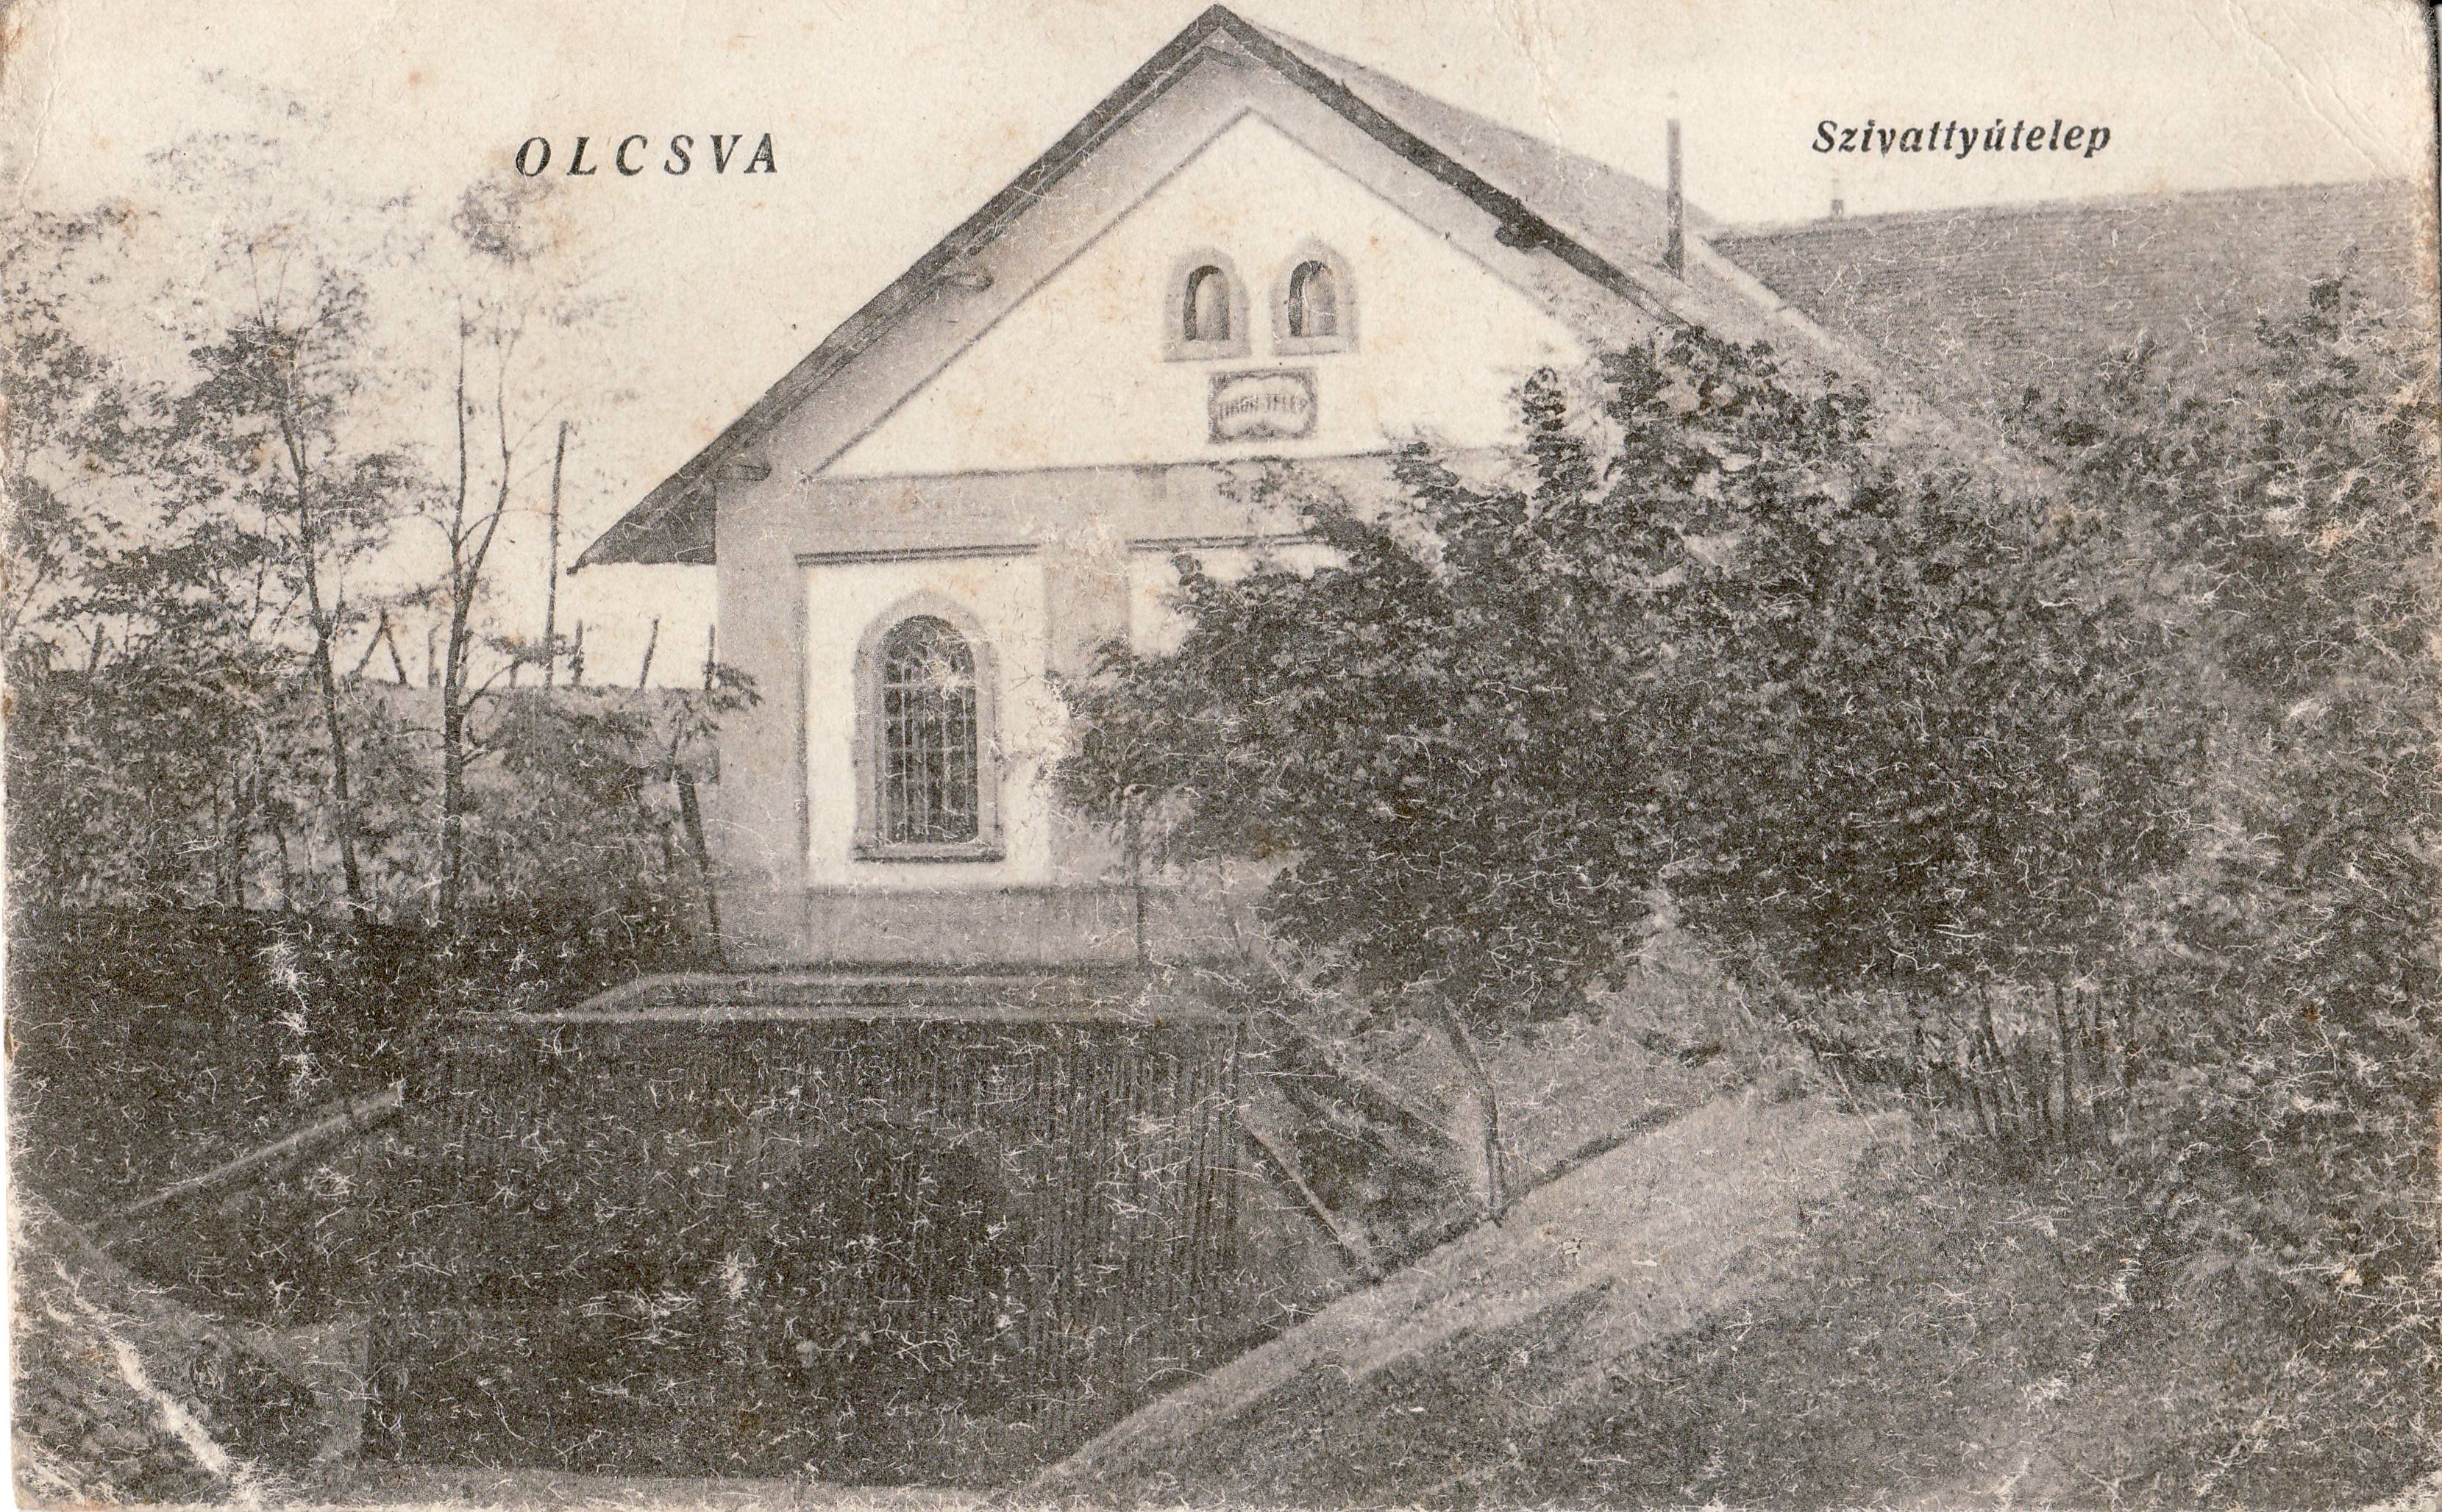 Olcsva – Szivattyútelep (Magyar Környezetvédelmi és Vízügyi Múzeum - Duna Múzeum CC BY-NC-SA)